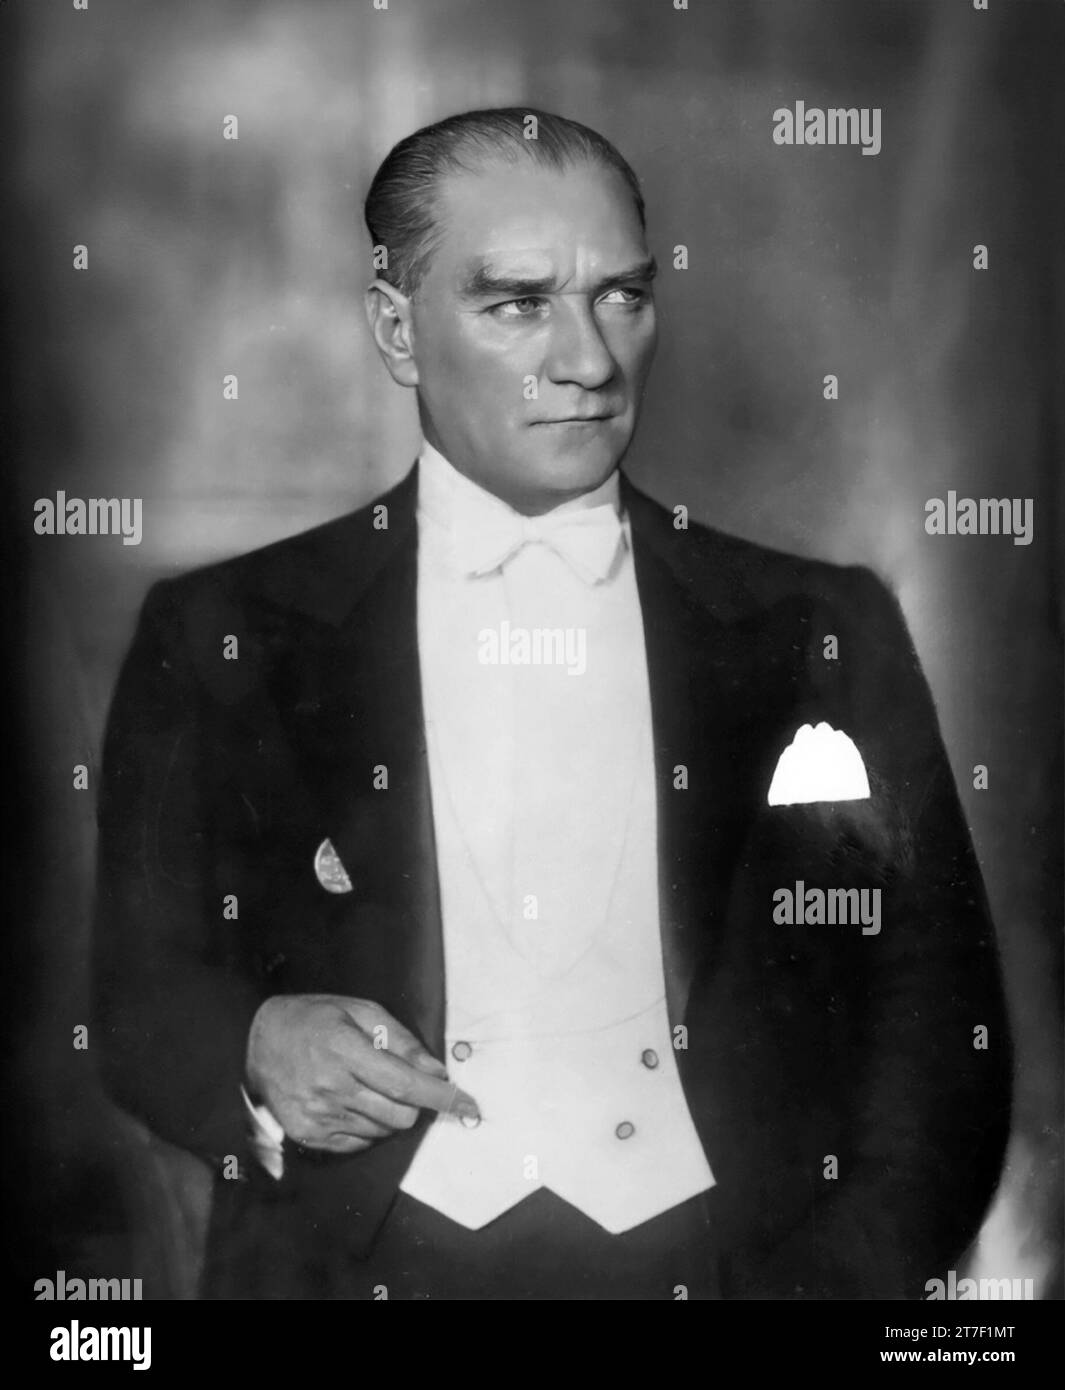 Mustafa Kemal Ataturk. Ritratto dell'ex presidente della Turchia e fondatore della Repubblica turca, Mustafa Kemal Atatürk o Mustafa Kemal Pasha (c. 1881-1938), 1932 Foto Stock